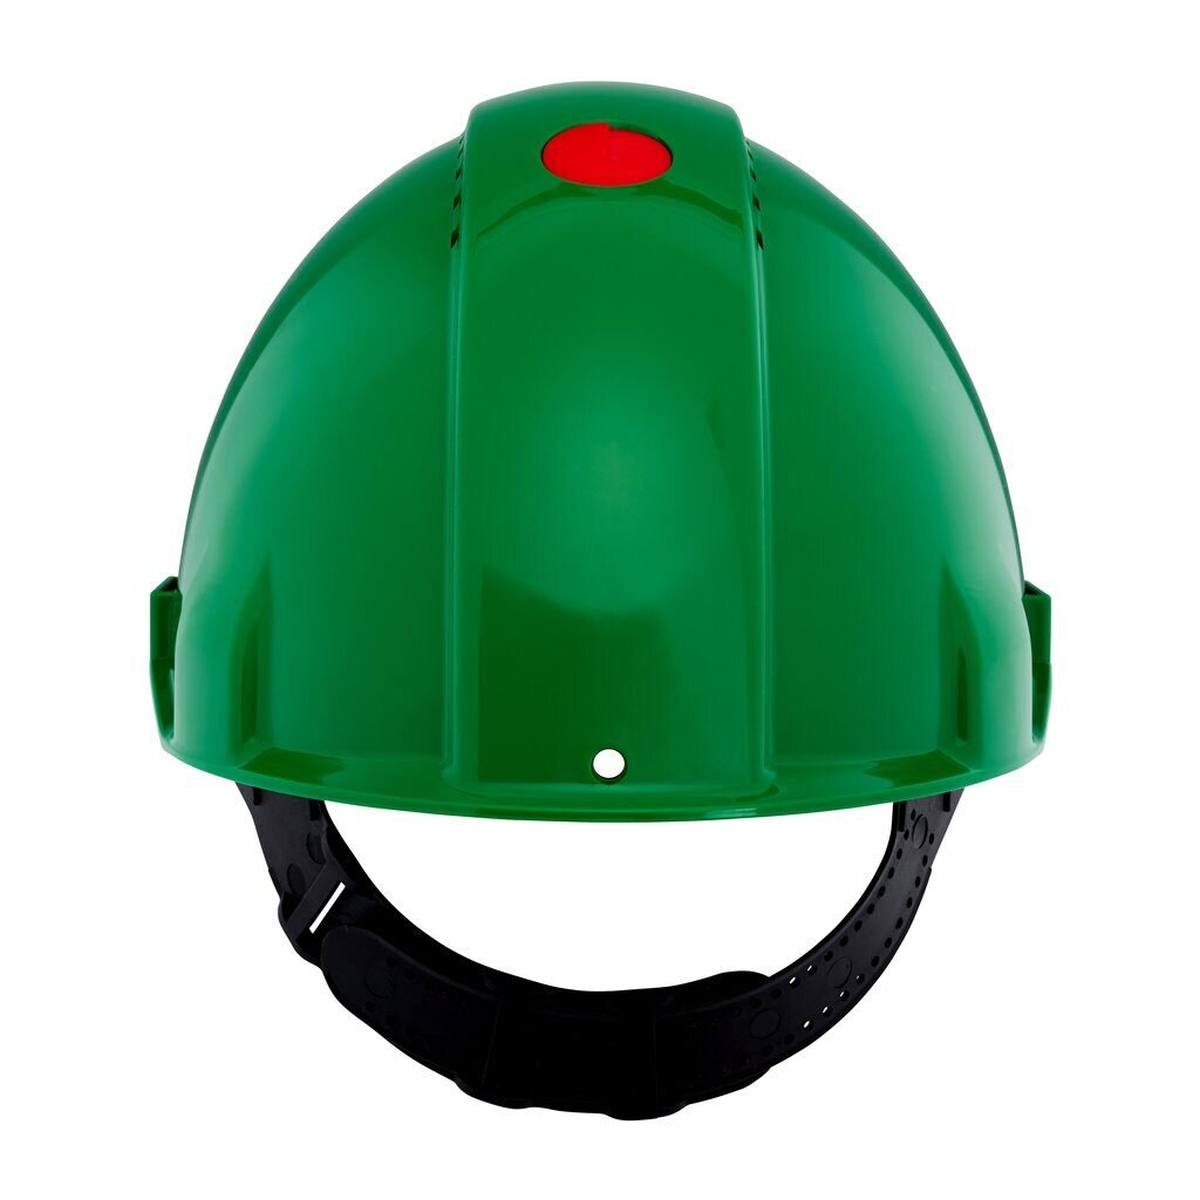 3M G3000 casque de protection G30CUG en vert, ventilé, avec uvicator, pinlock et bande de soudure en plastique